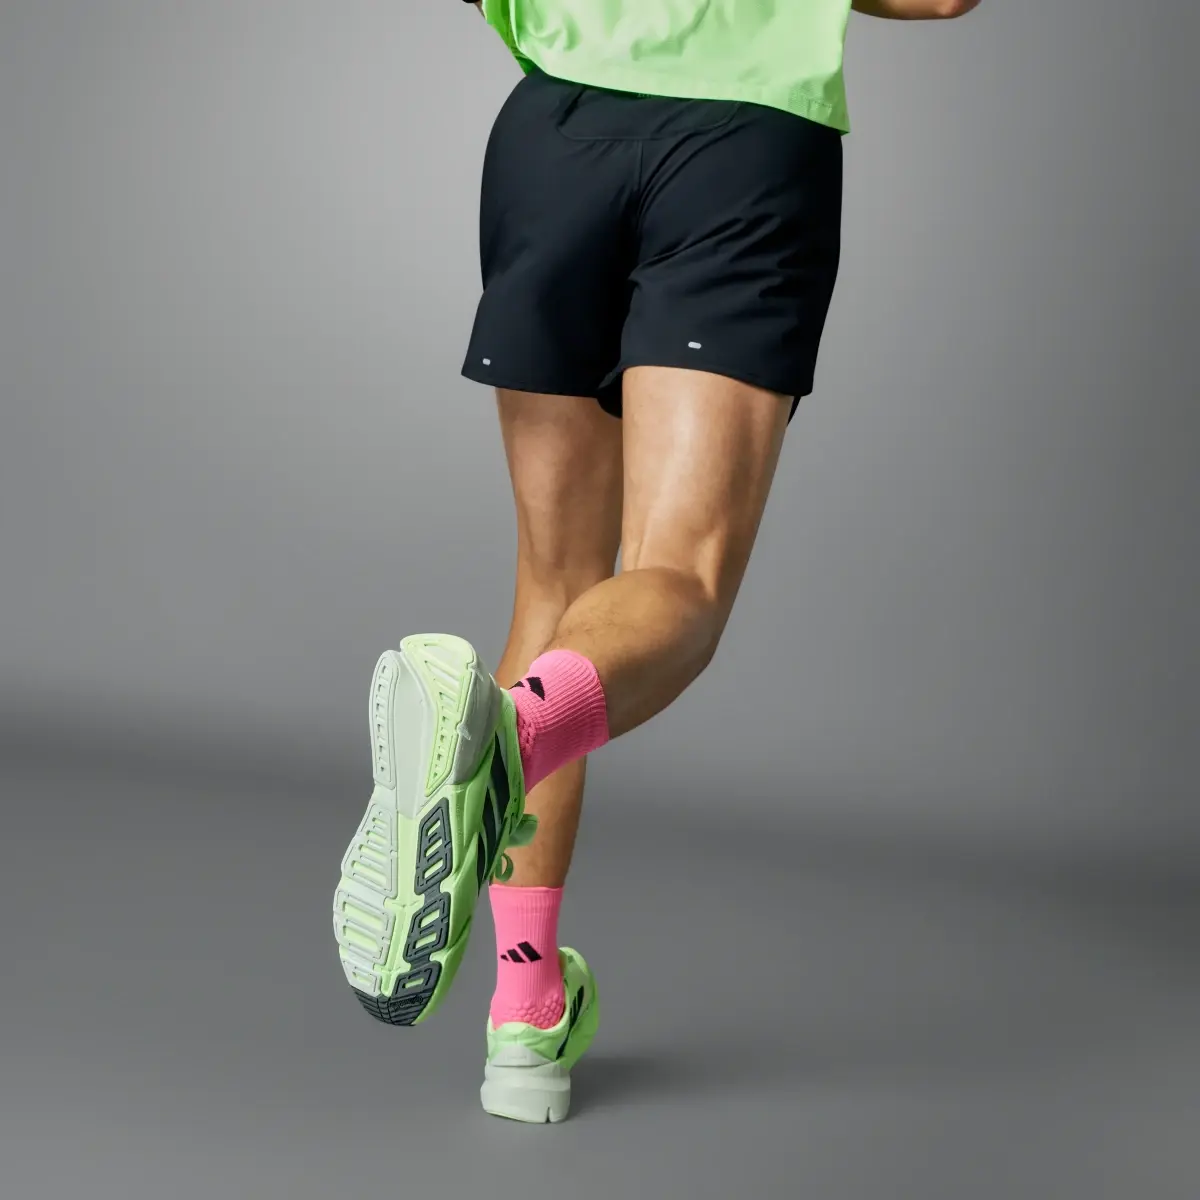 Adidas Shorts Own the Run 3 Franjas. 2